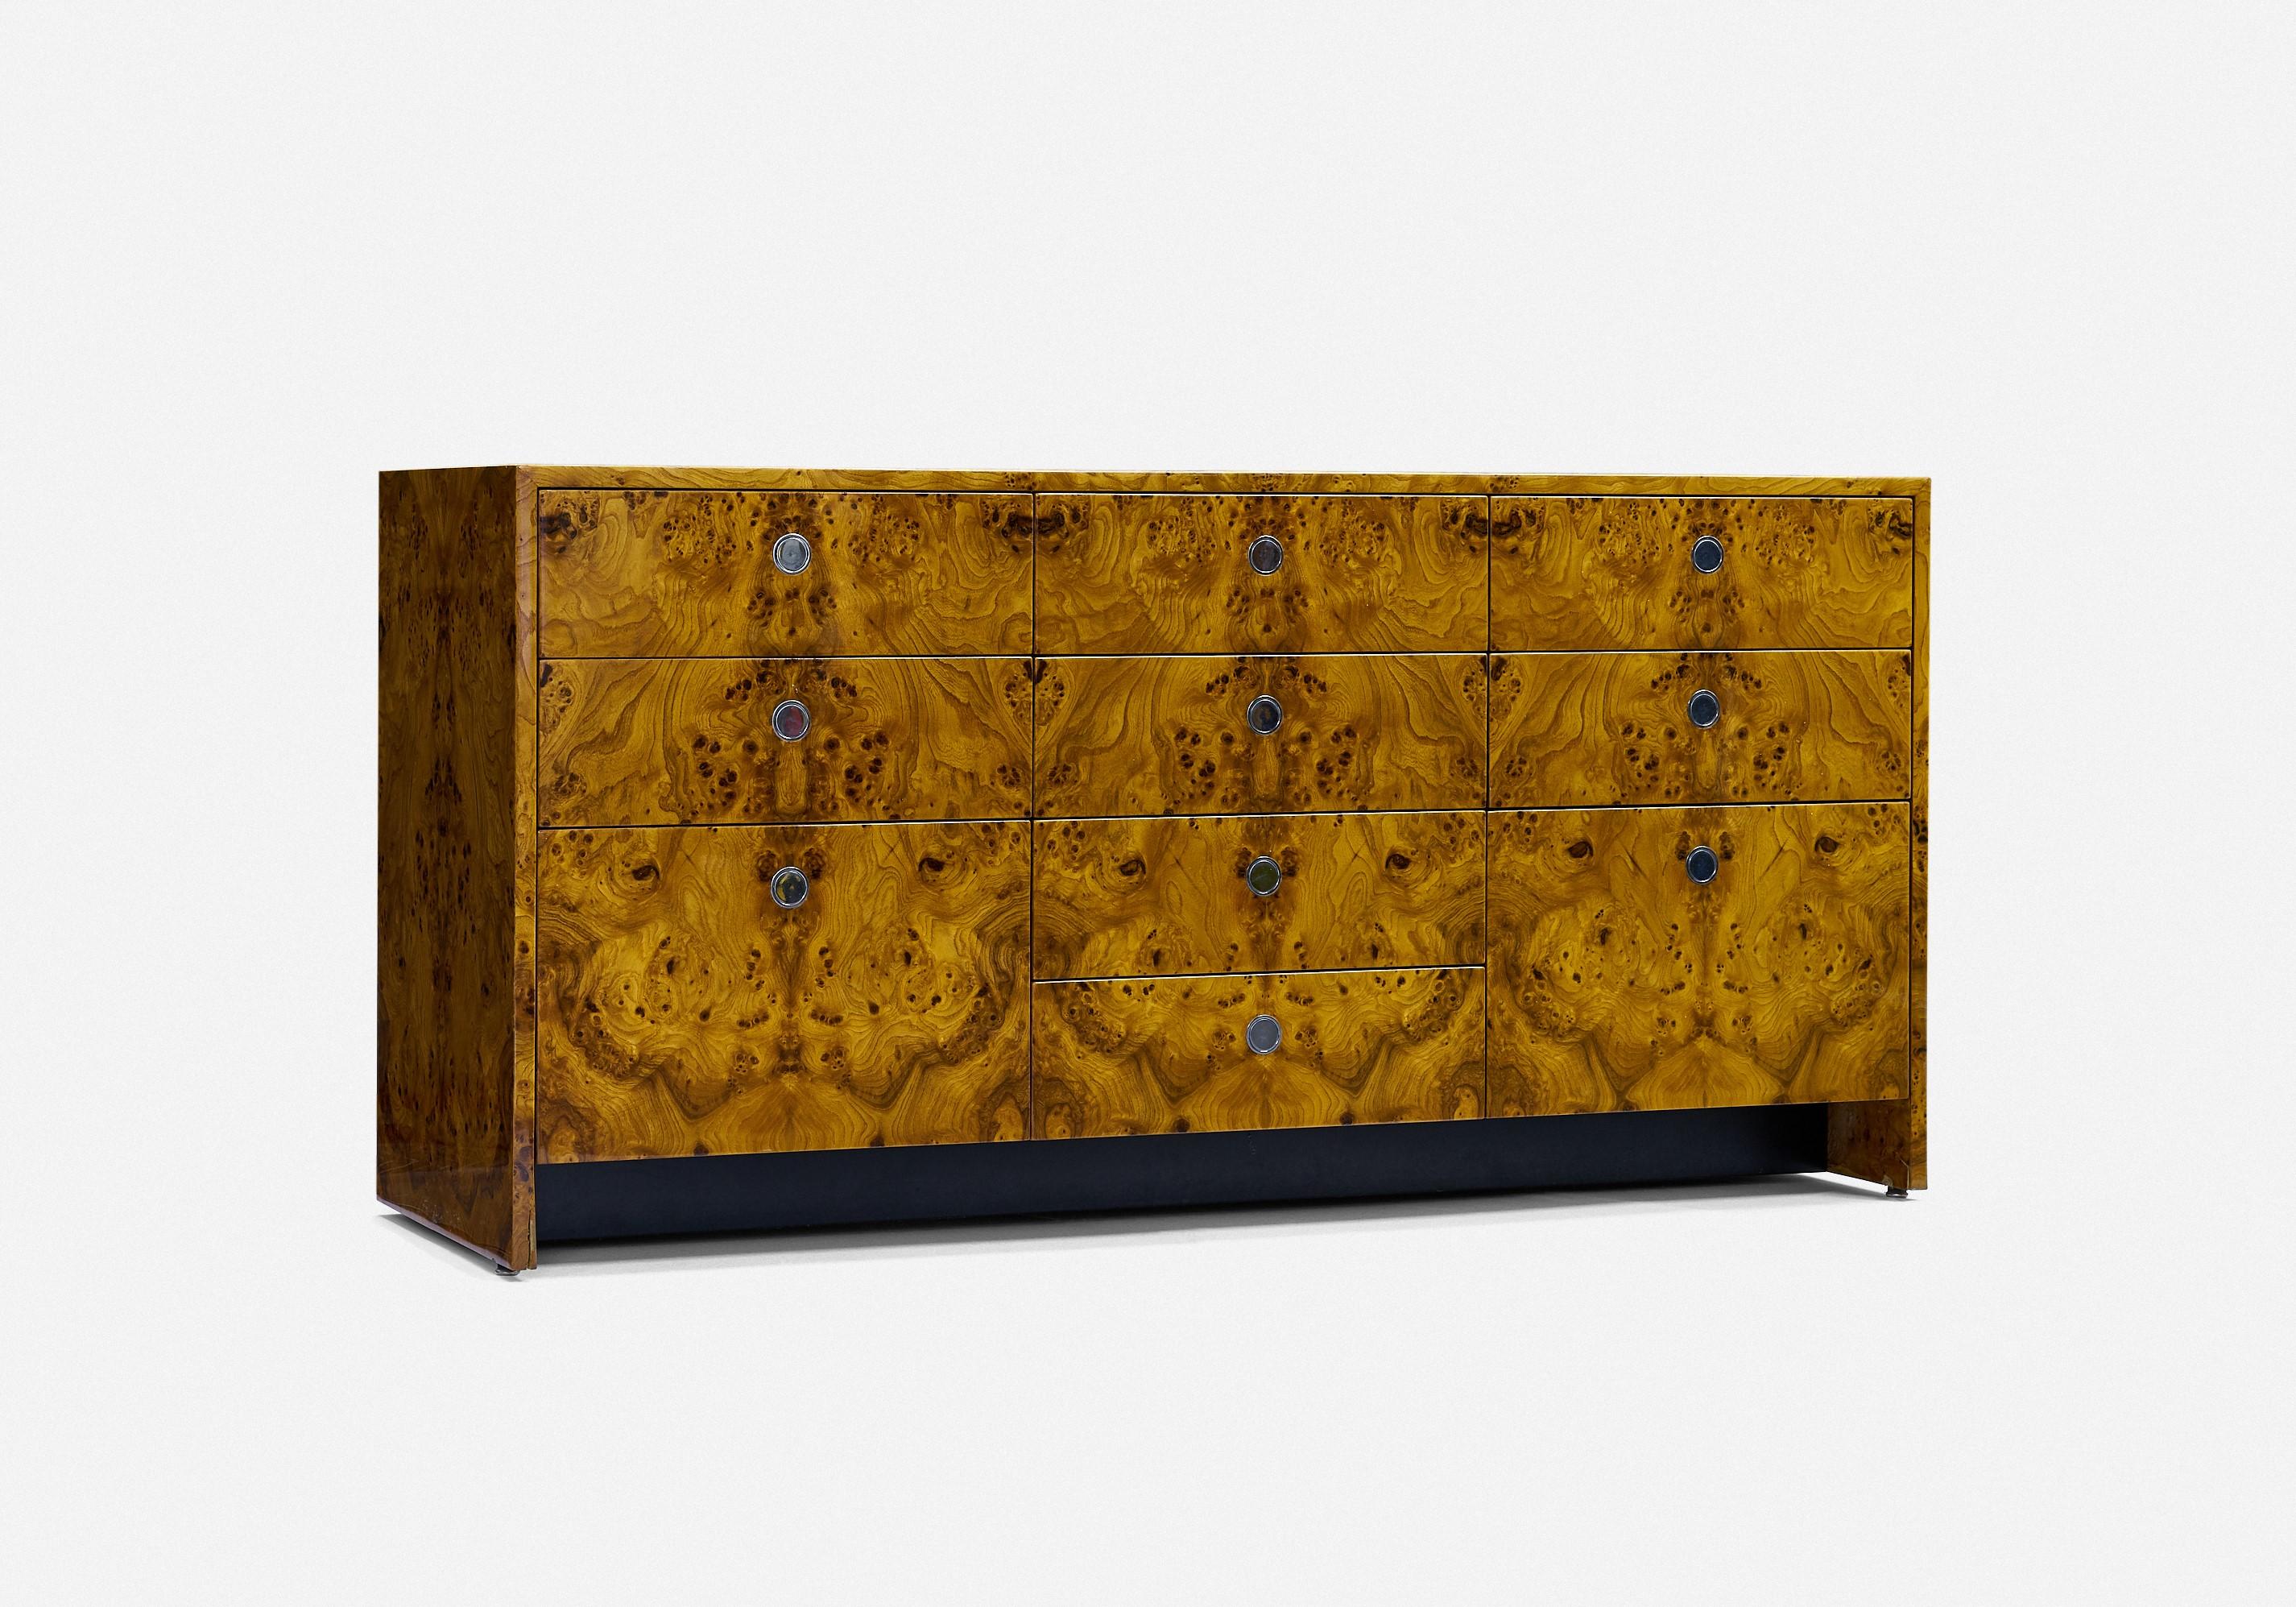 Ward Bennett
armoire à neuf tiroirs

Meubles Brickell
burlwood
USA c 1960s 

Armoire à neuf tiroirs avec poignées annulaires chromées encastrées, comprend deux tiroirs à dossiers, finition polyuréthane brillante, sans marquage.